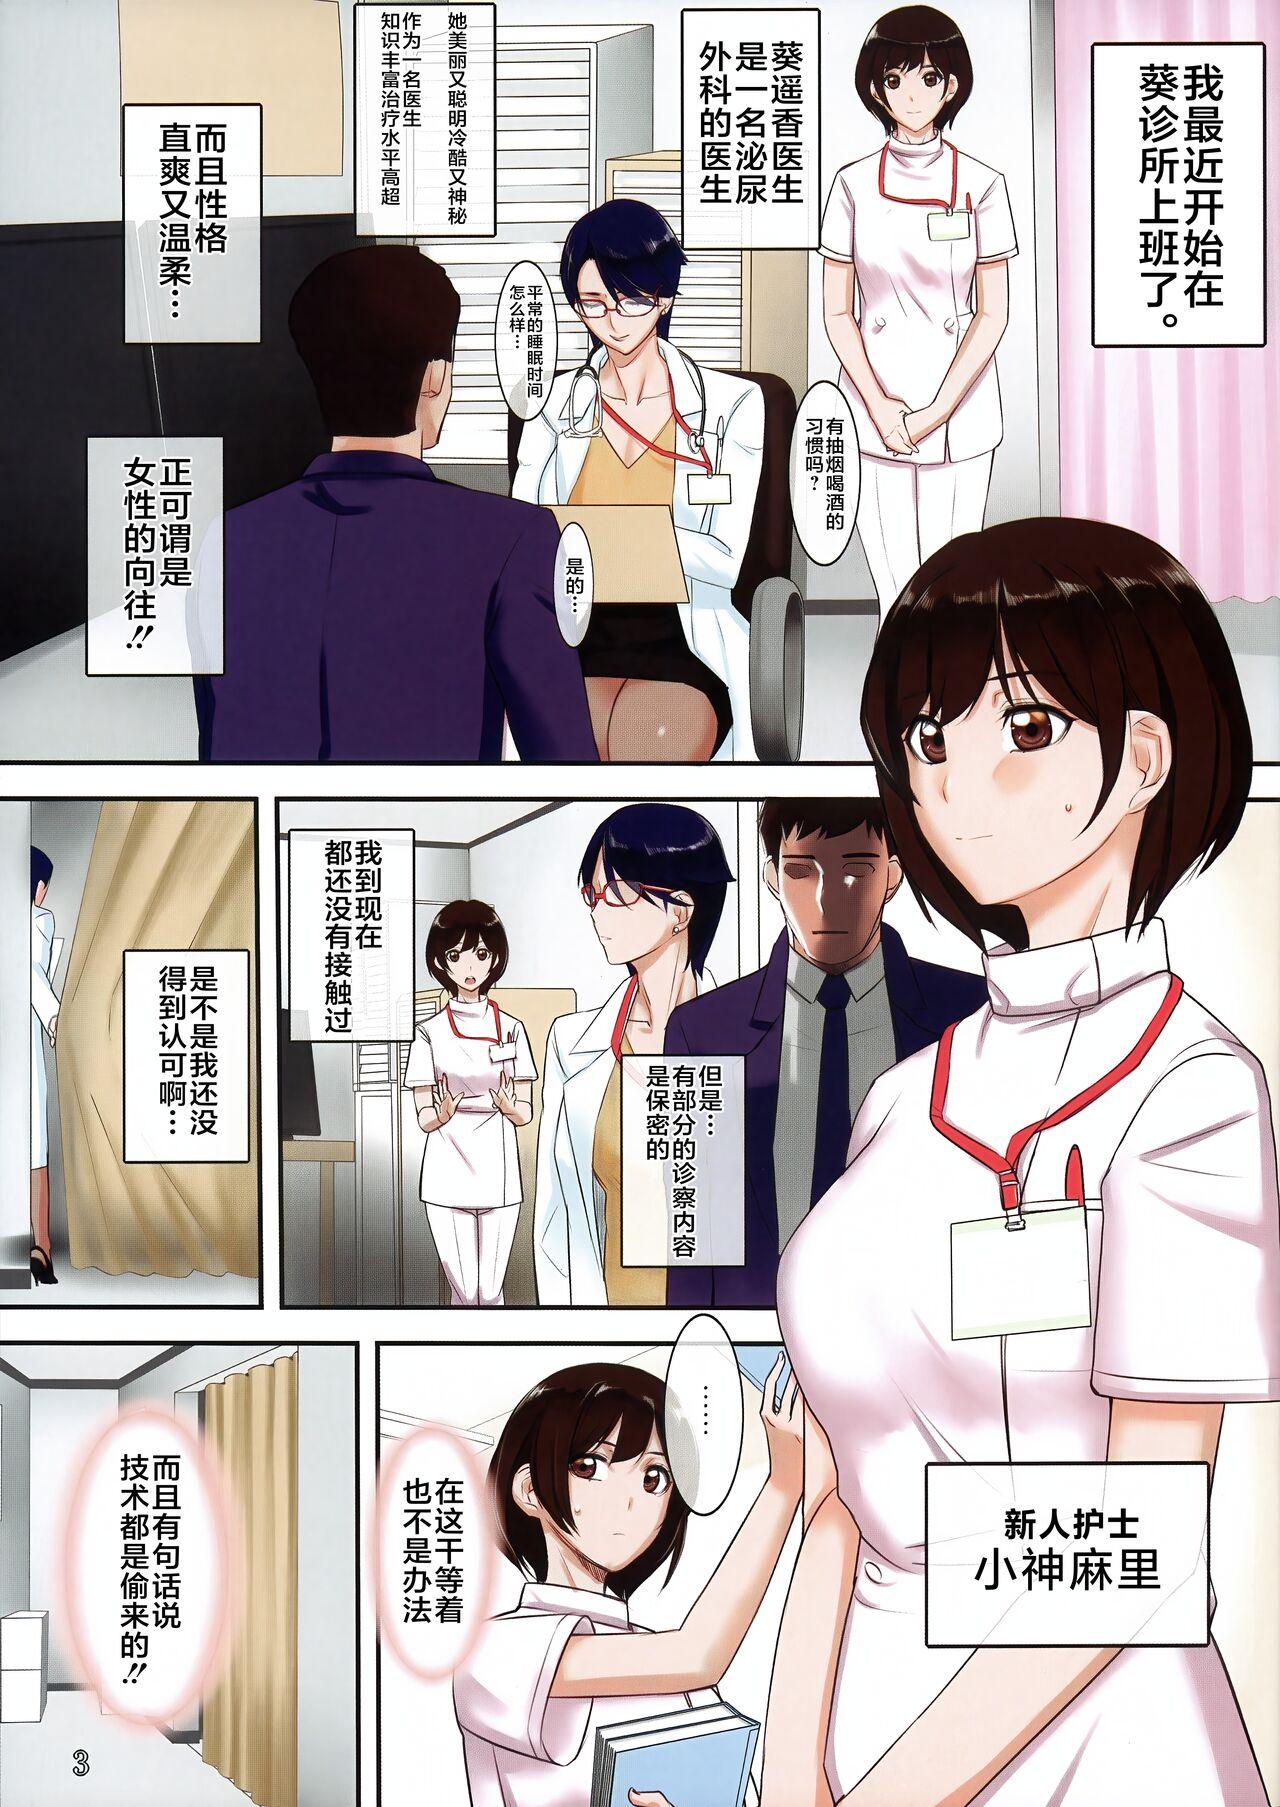 Chijoi Aoi Haruka no Shinjin Nurse Shirudaku Shinryou 2